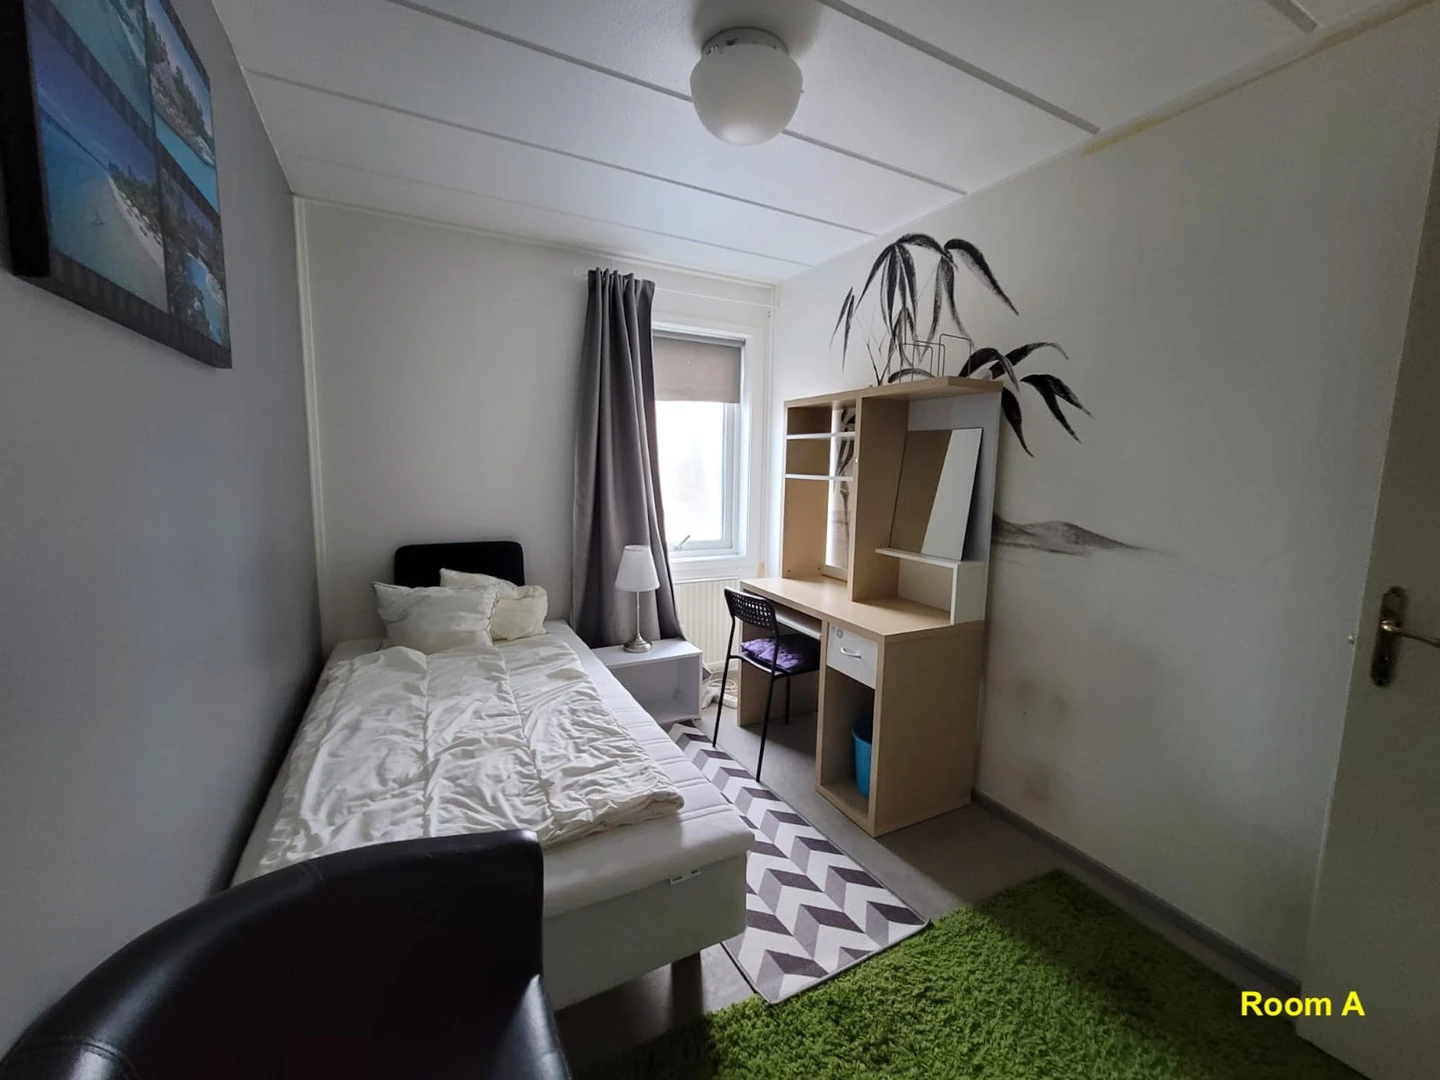 Chambre à louer dans un appartement en colocation à stockholm